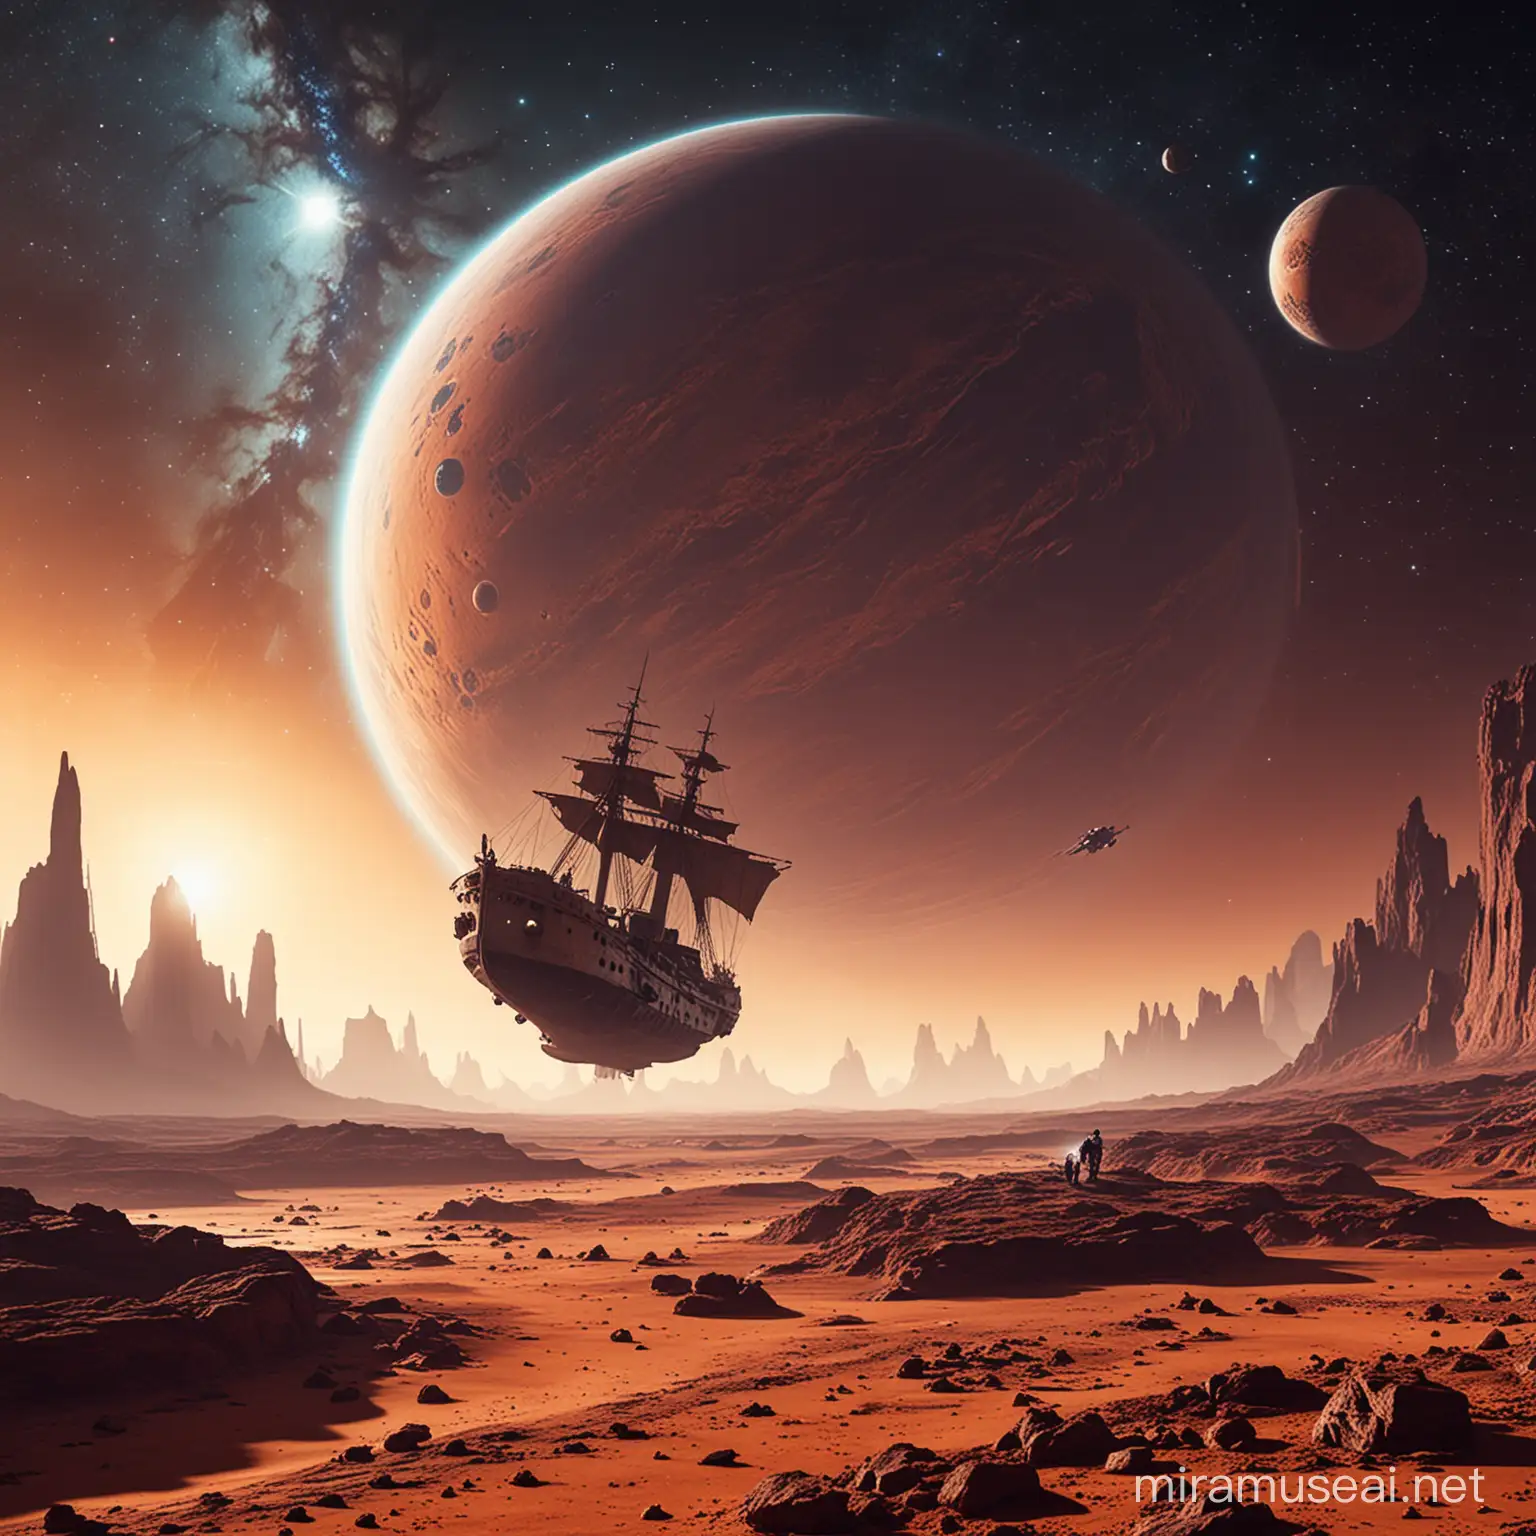  a ship landing on a strange planet
